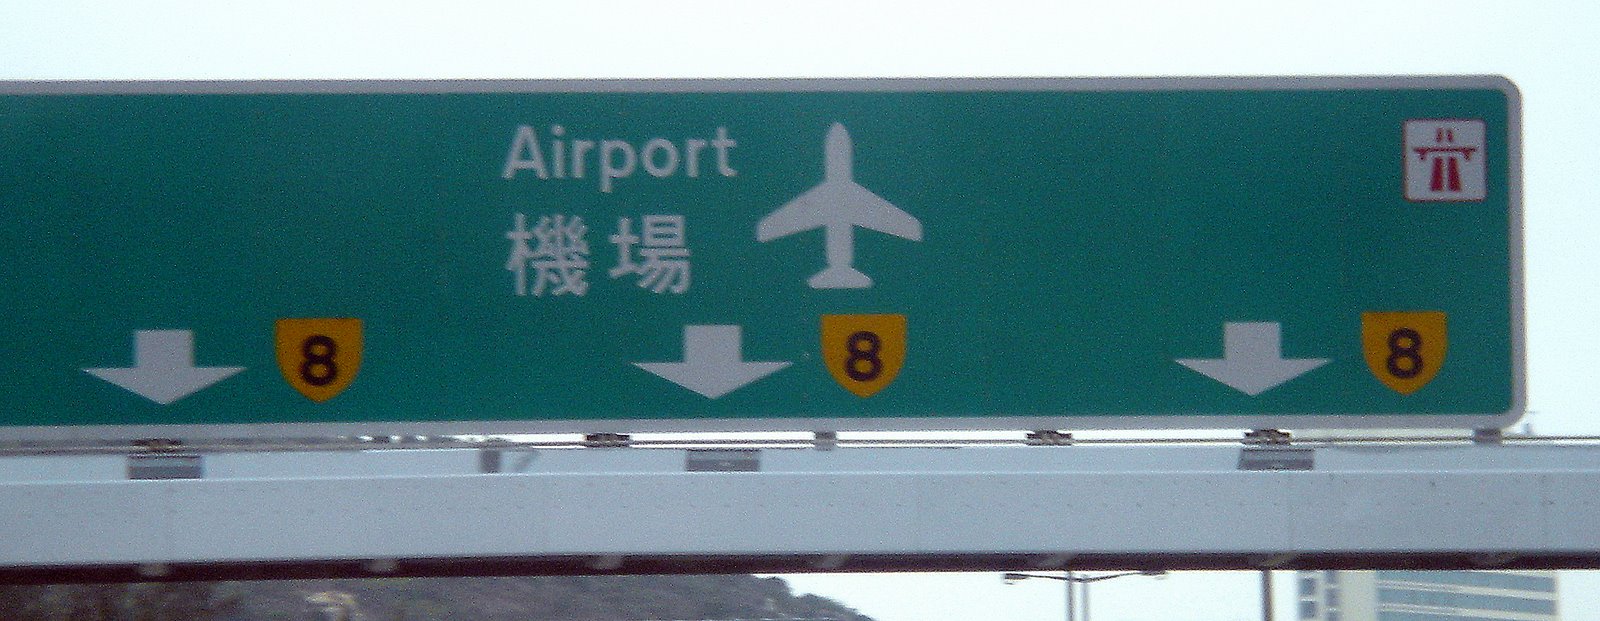 [P8+airport.jpg]